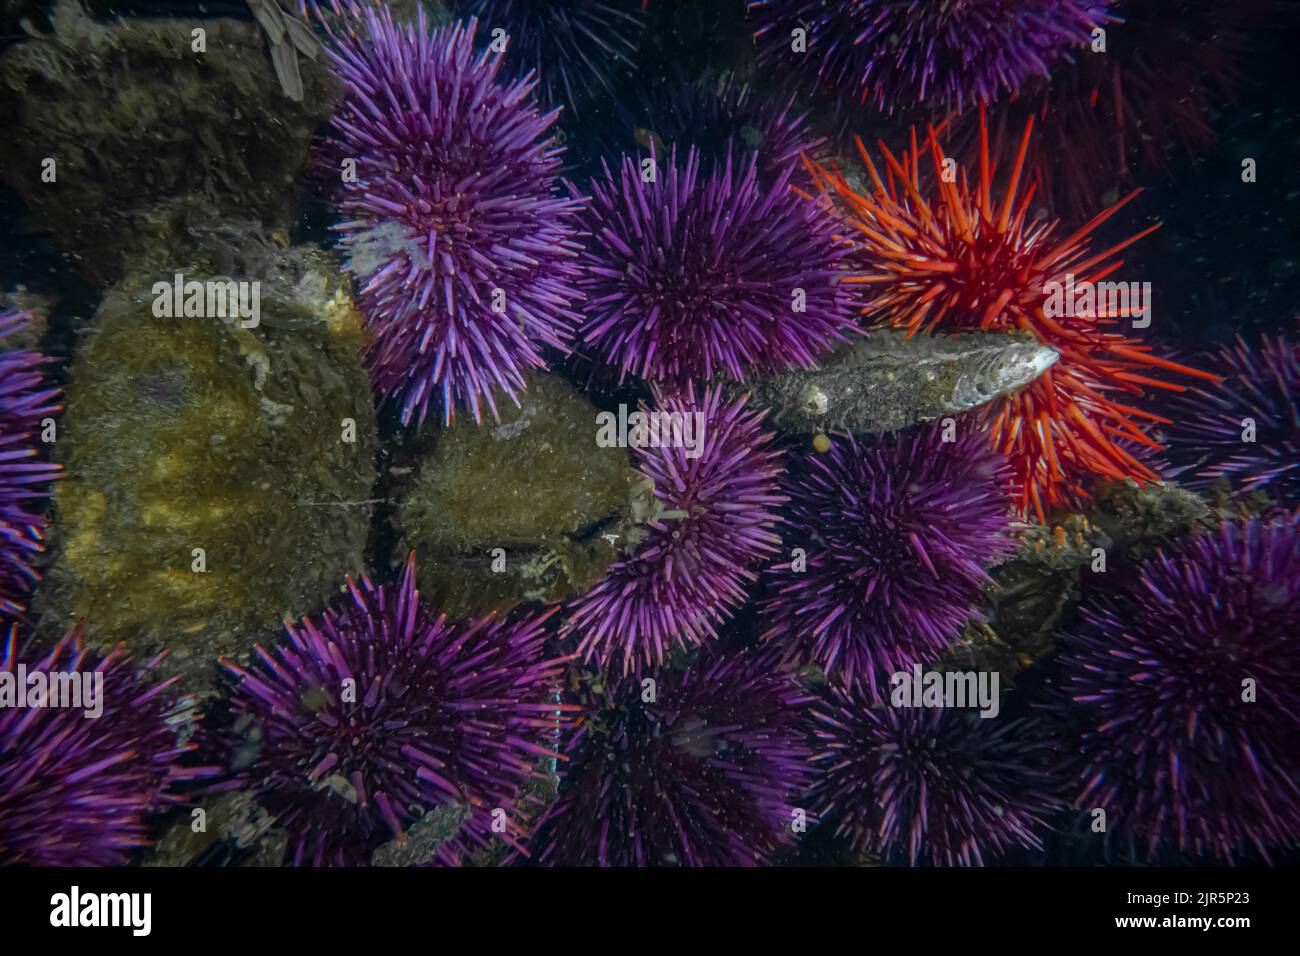 Orchini del Mar Rosso e viola a Tongue Point nell'area ricreativa di Salt Creek lungo lo stretto di Juan de Fuca, Olympic Peninsula, Washington state, USA Foto Stock